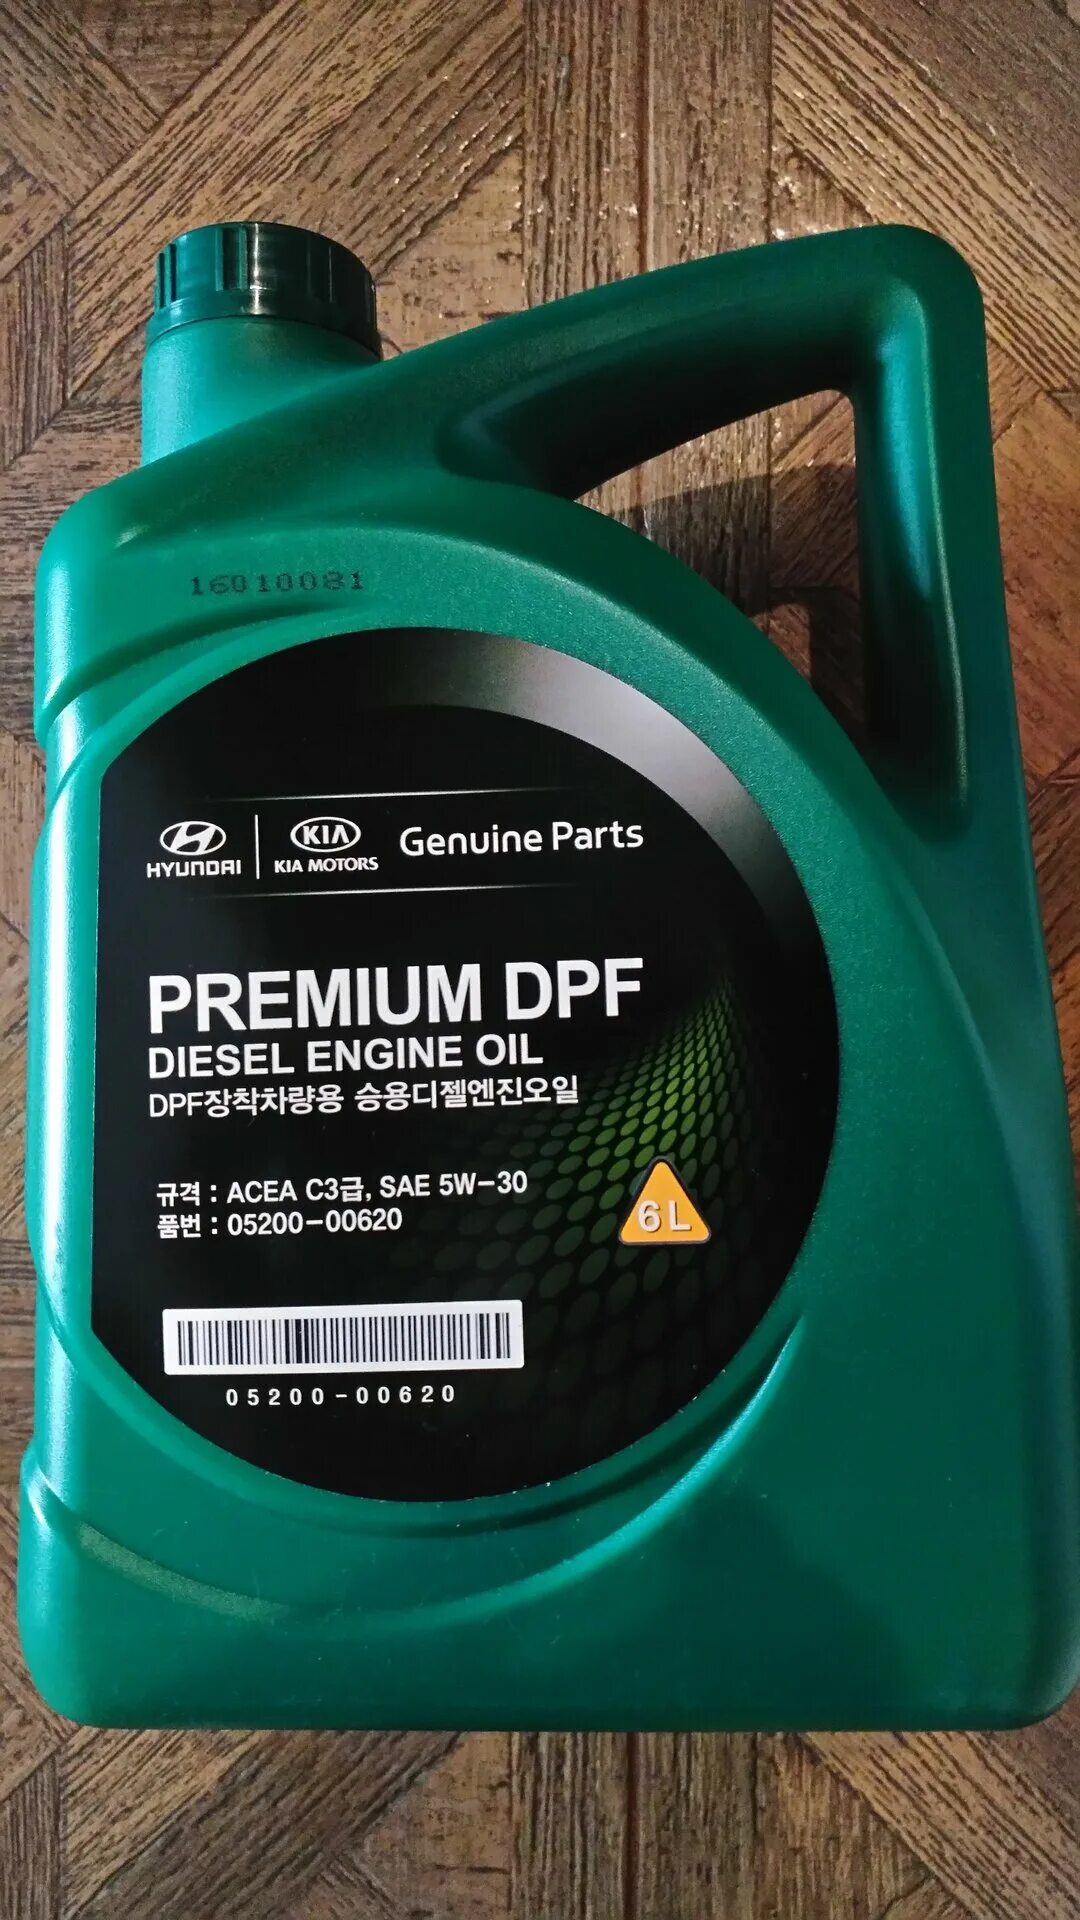 Масло hyundai premium dpf. Premium DPF Diesel 5w-30. Масло mobis Premium DPF Diesel 5w-30. Hyundai Kia Premium DPF 5w-30 6 л. Mobis Premium DPF Diesel 5w-30, 6 n.